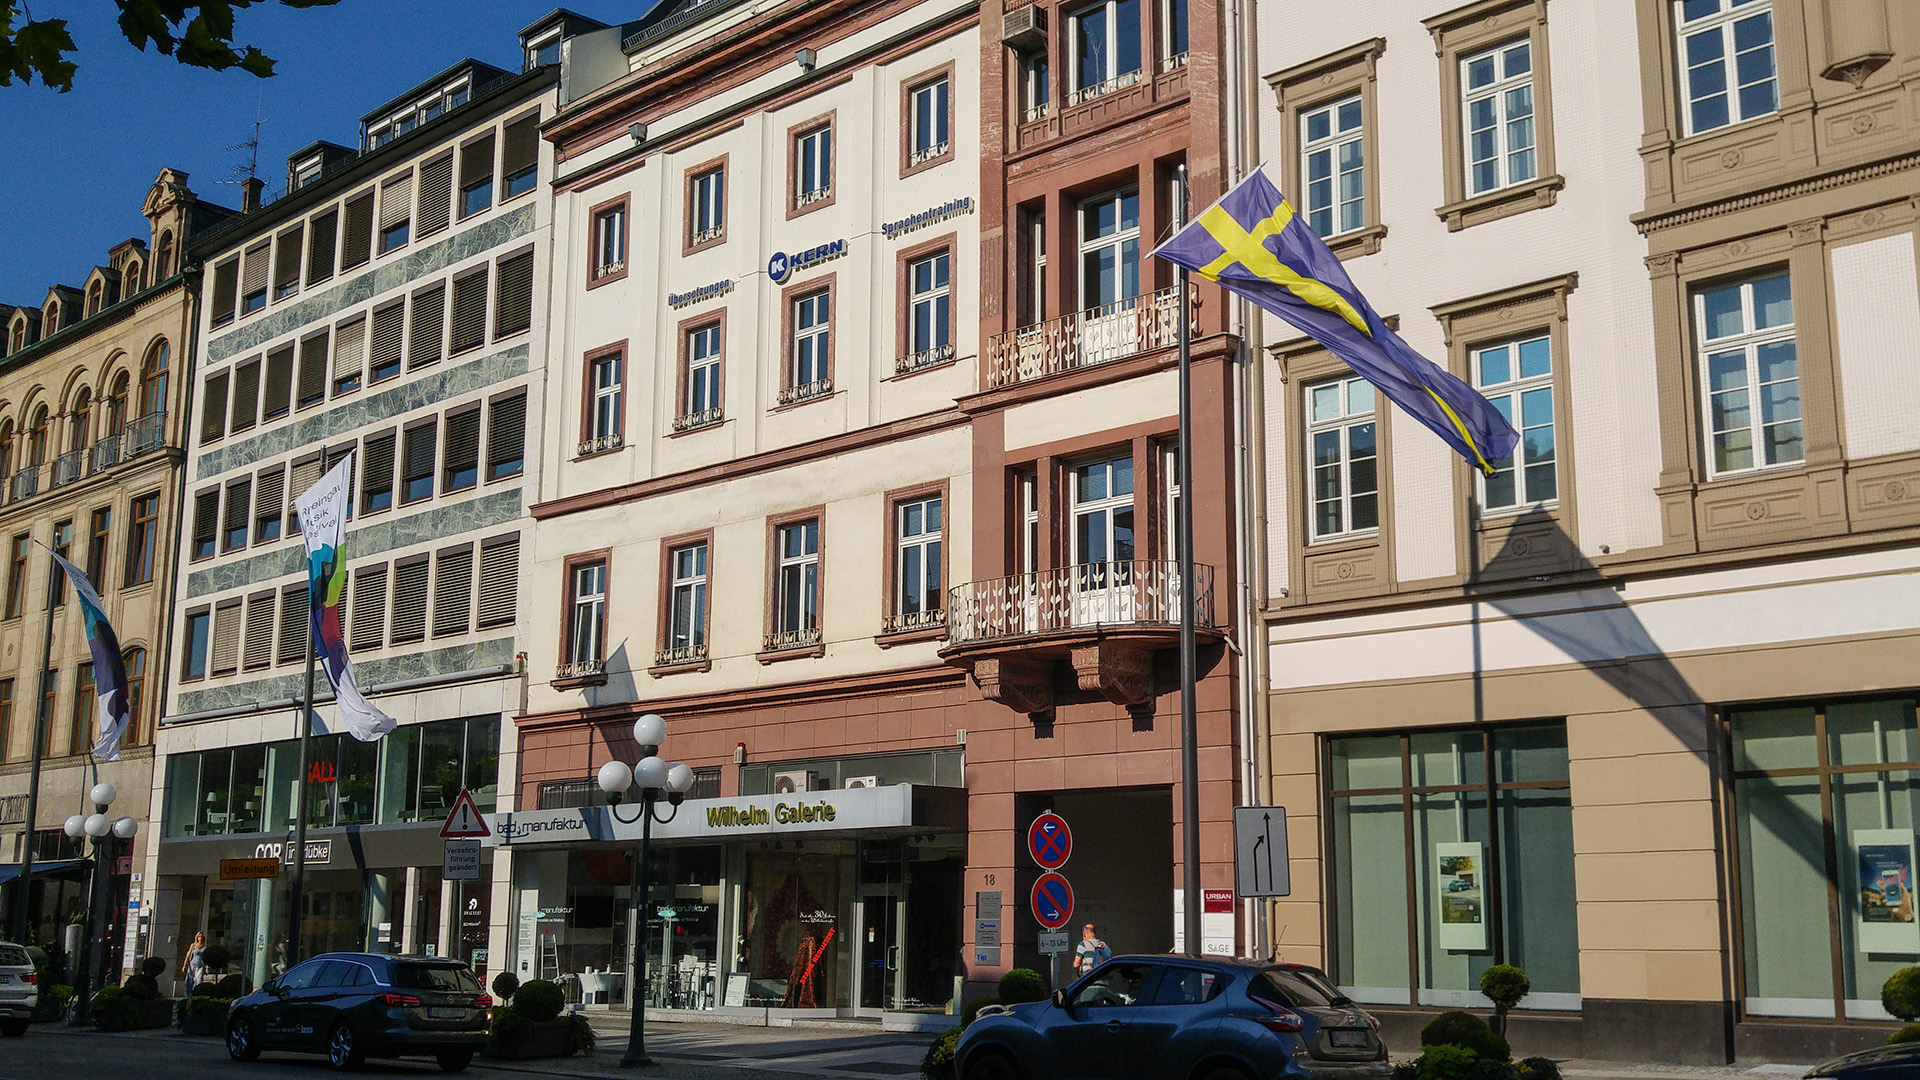 Biuro tłumaczeń w Wiesbaden